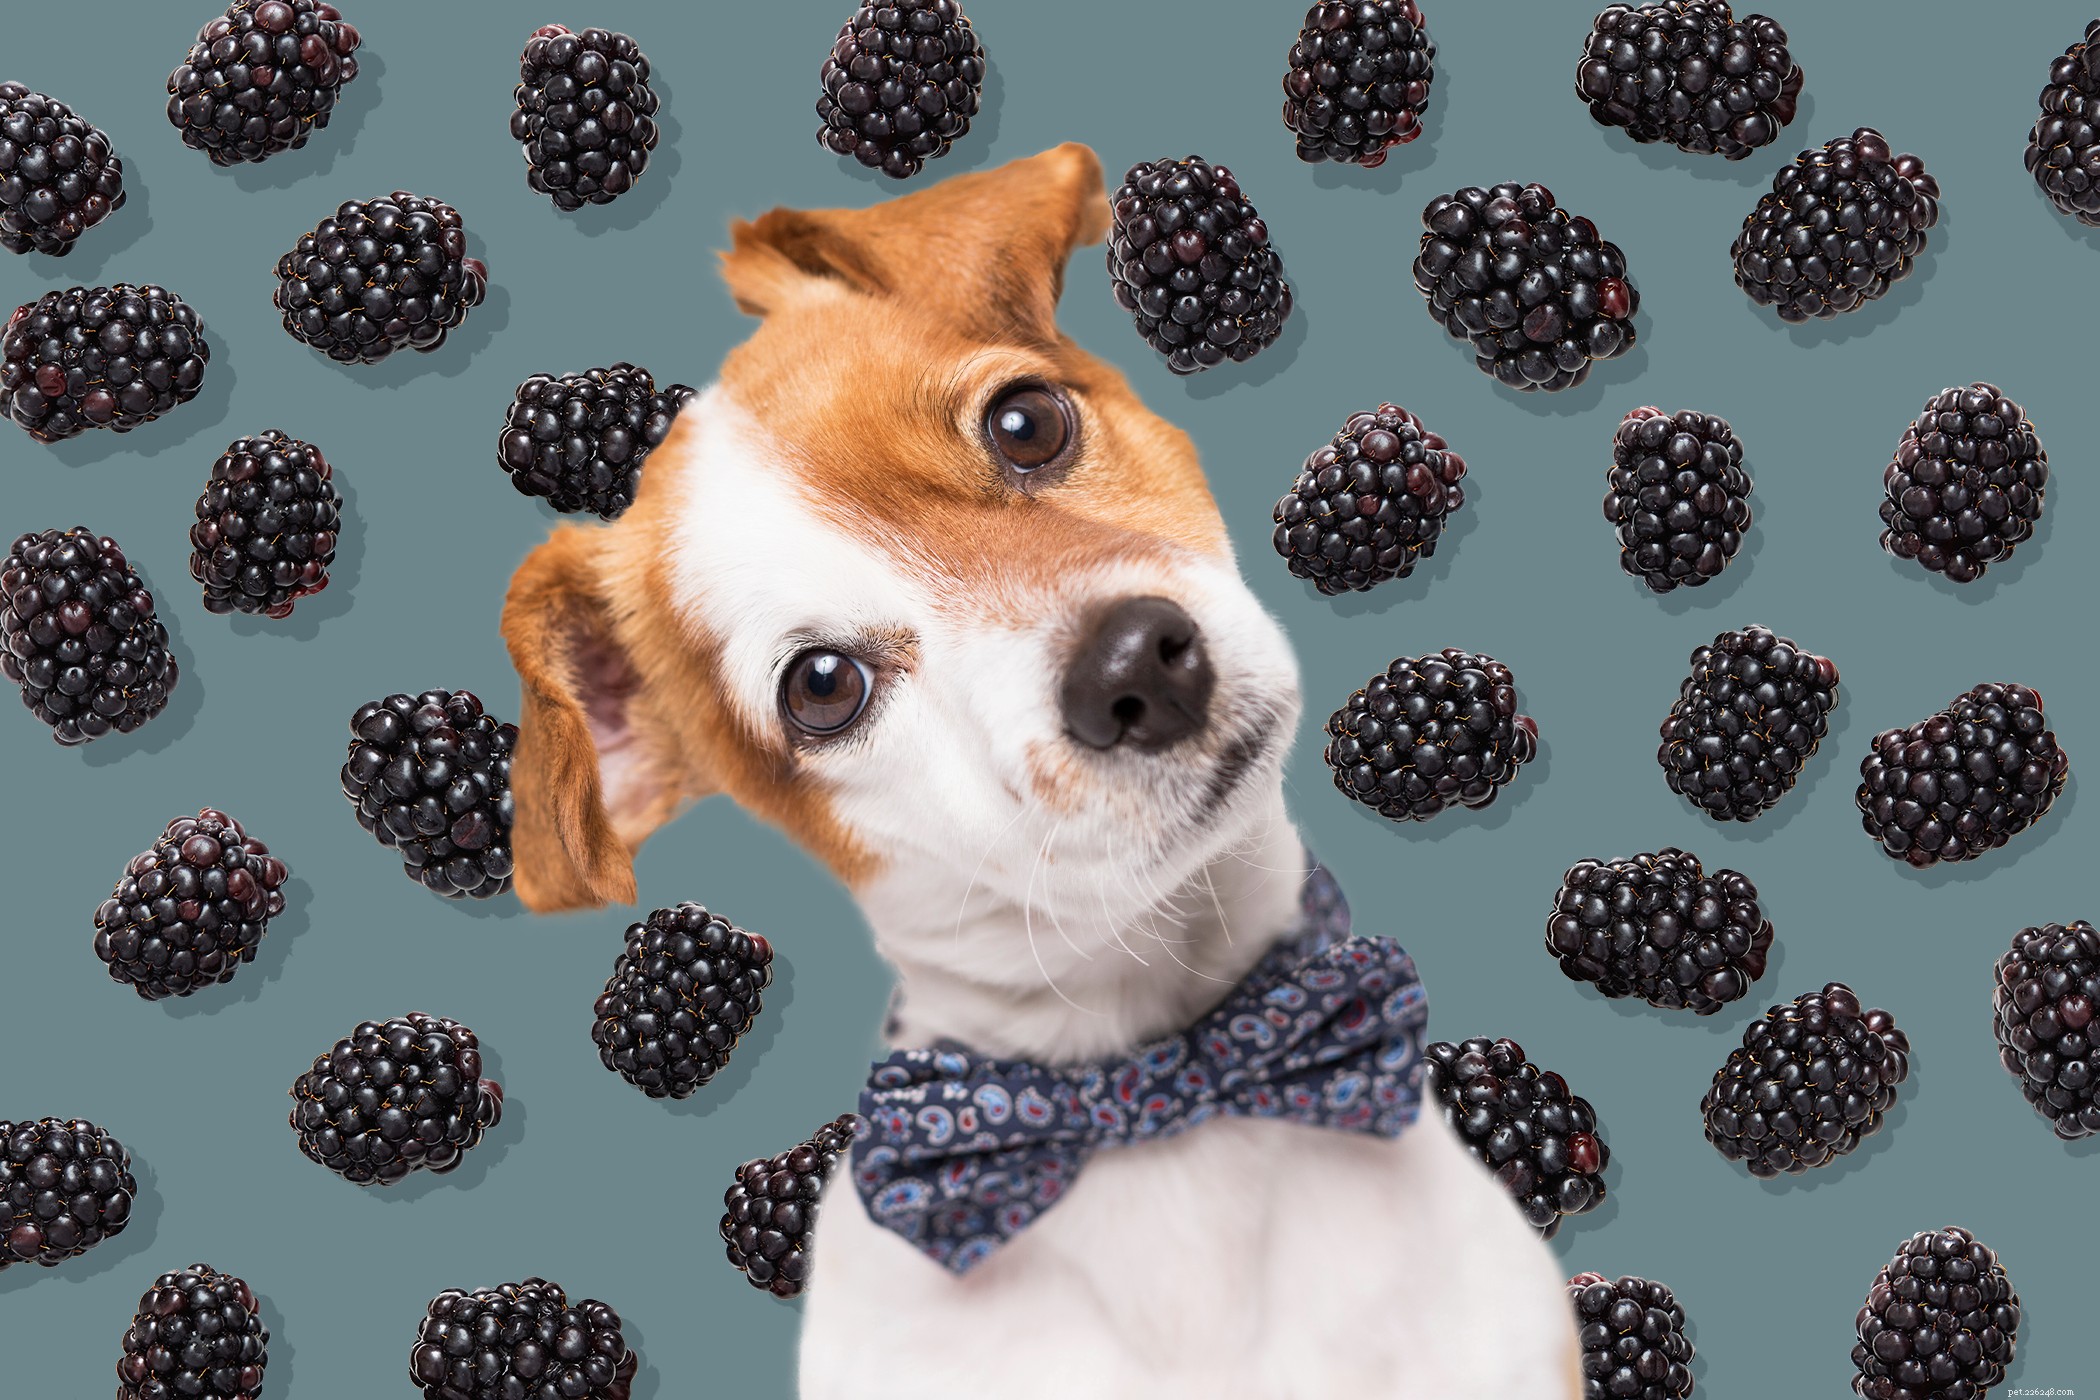 Os cães podem comer amoras? Aqui está o que você deve saber sobre esta saborosa fruta de verão